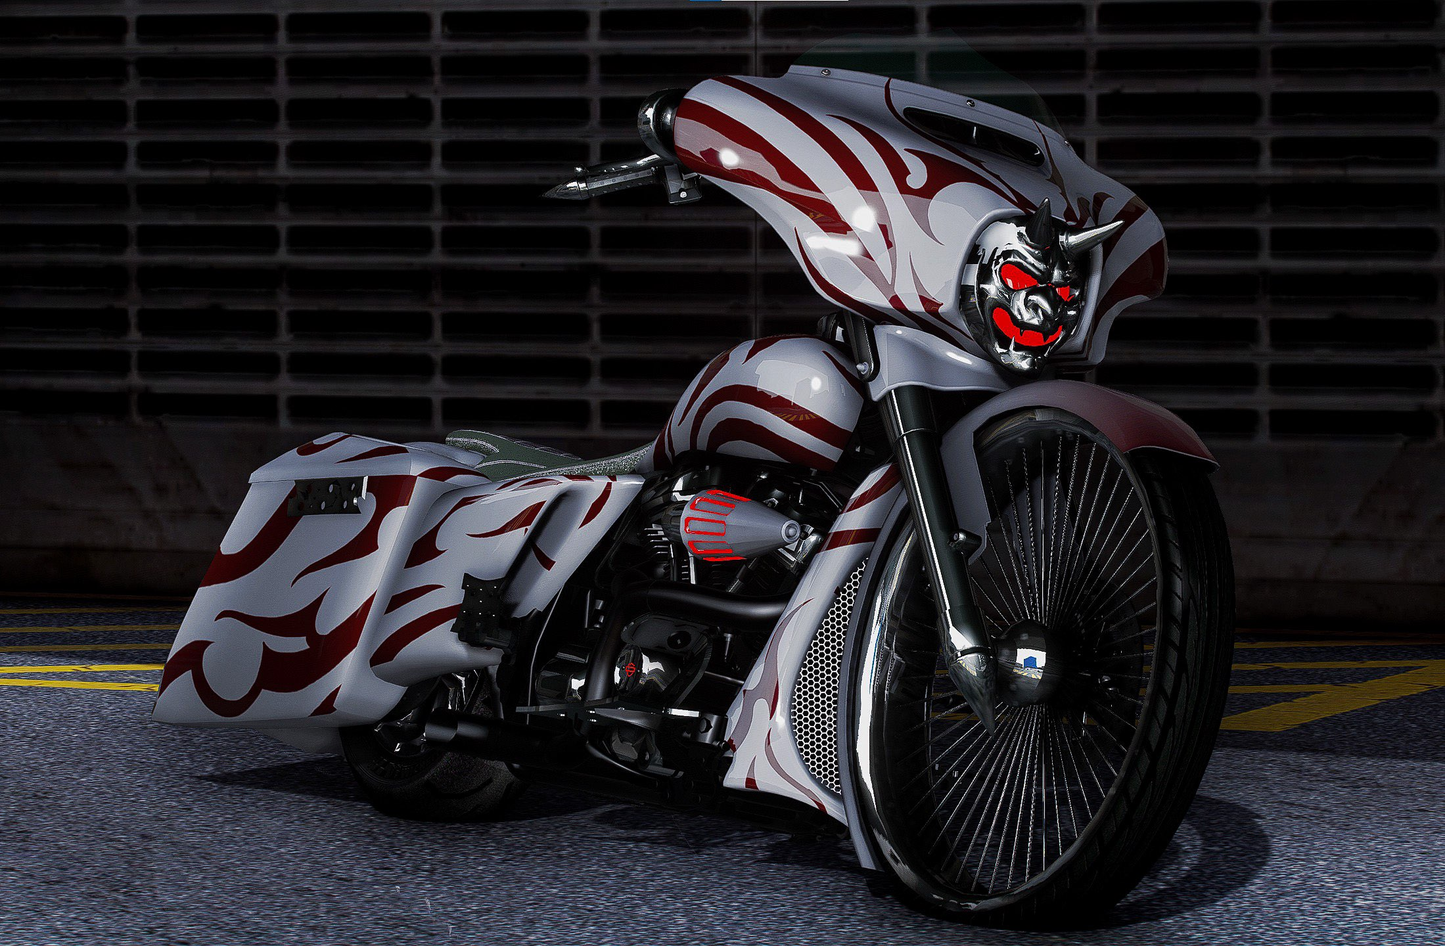 Custom Motorcycle